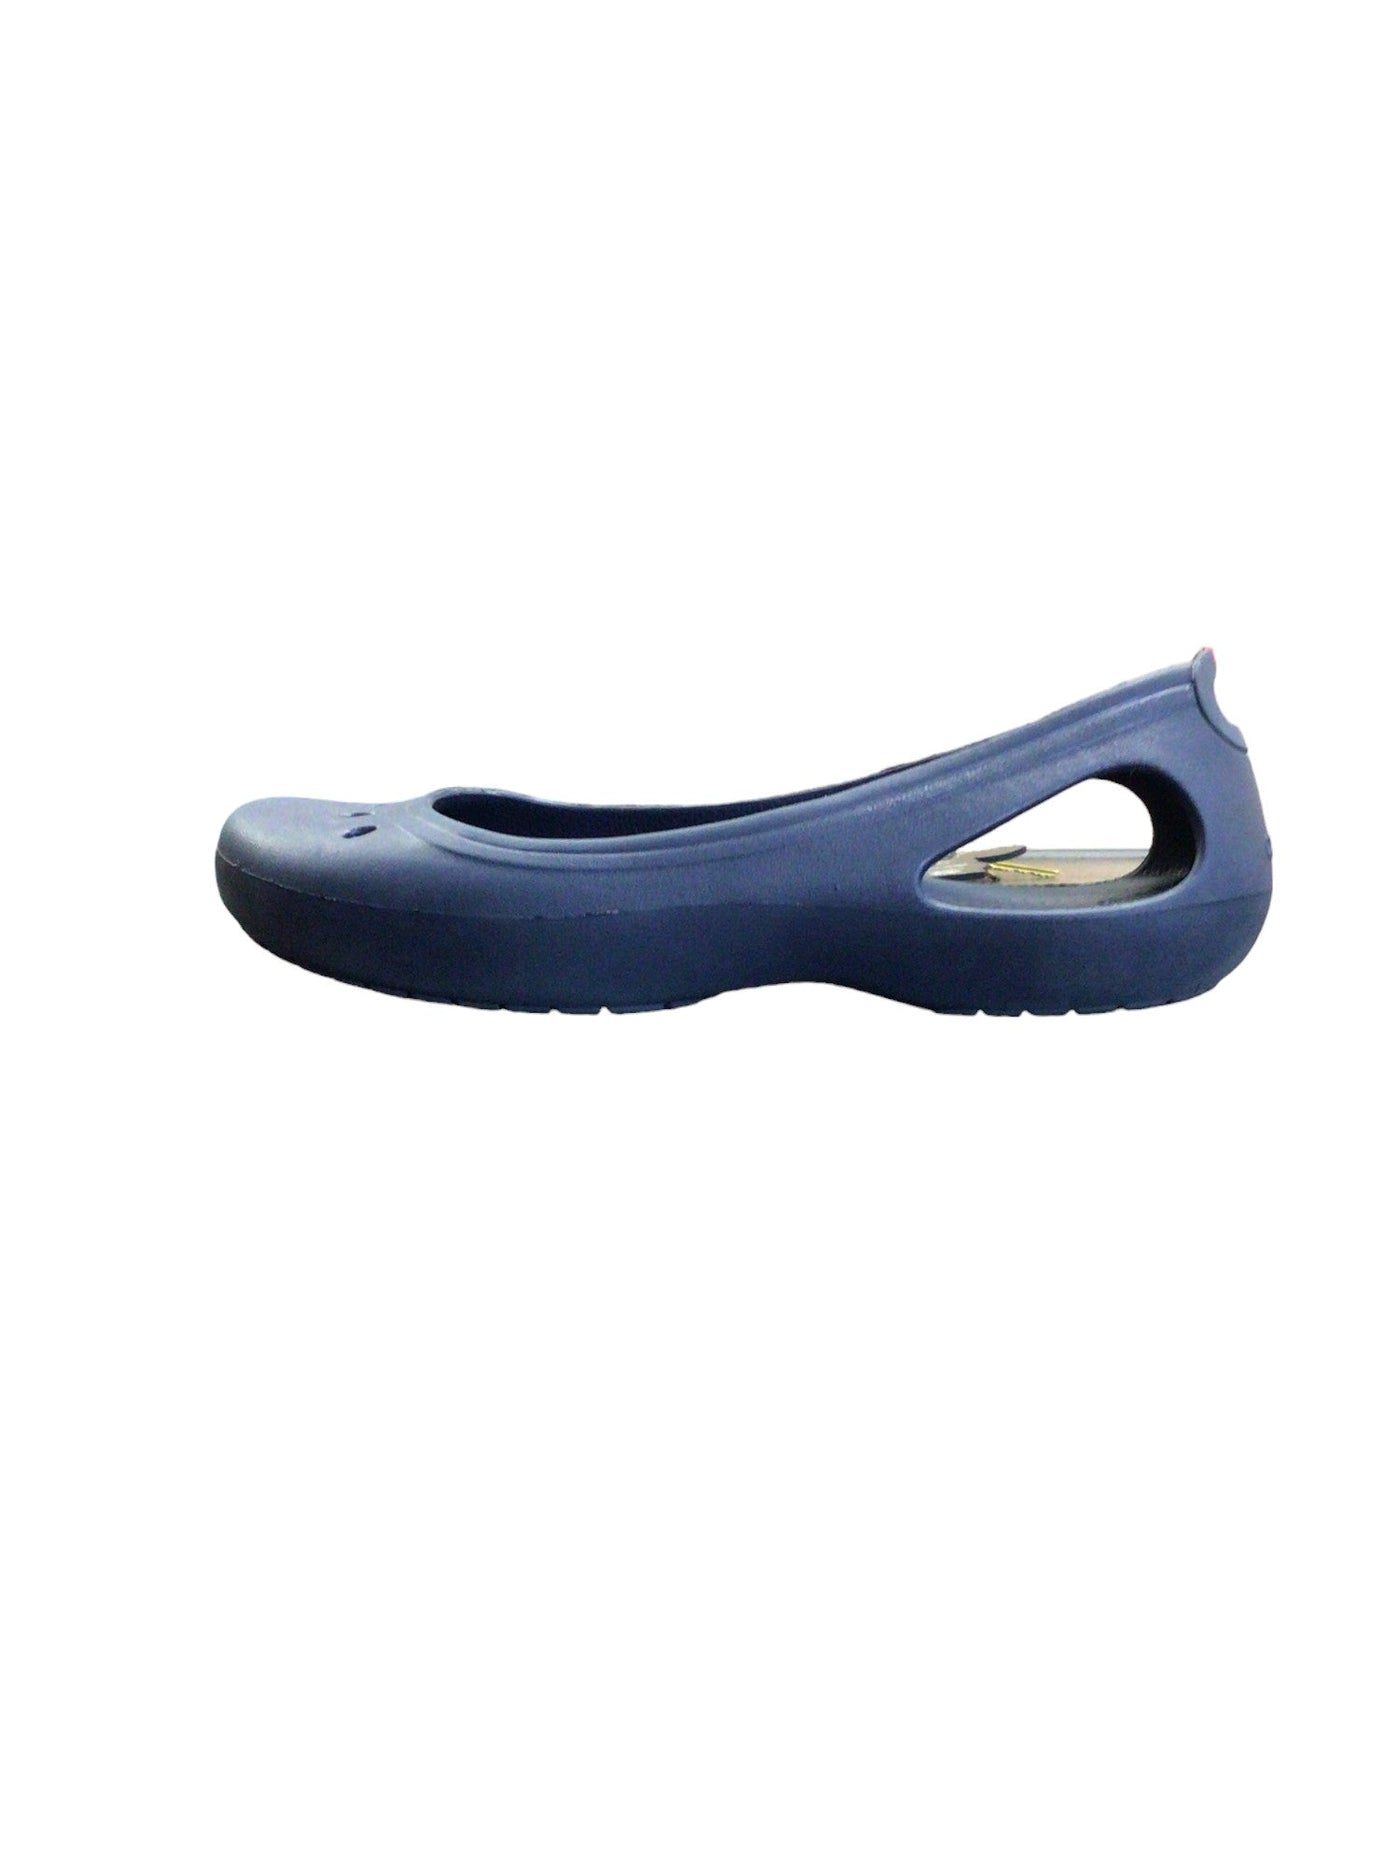 CROCS Women Flat Shoes Regular fit in Blue - Size 9 | 19.99 $ KOOP